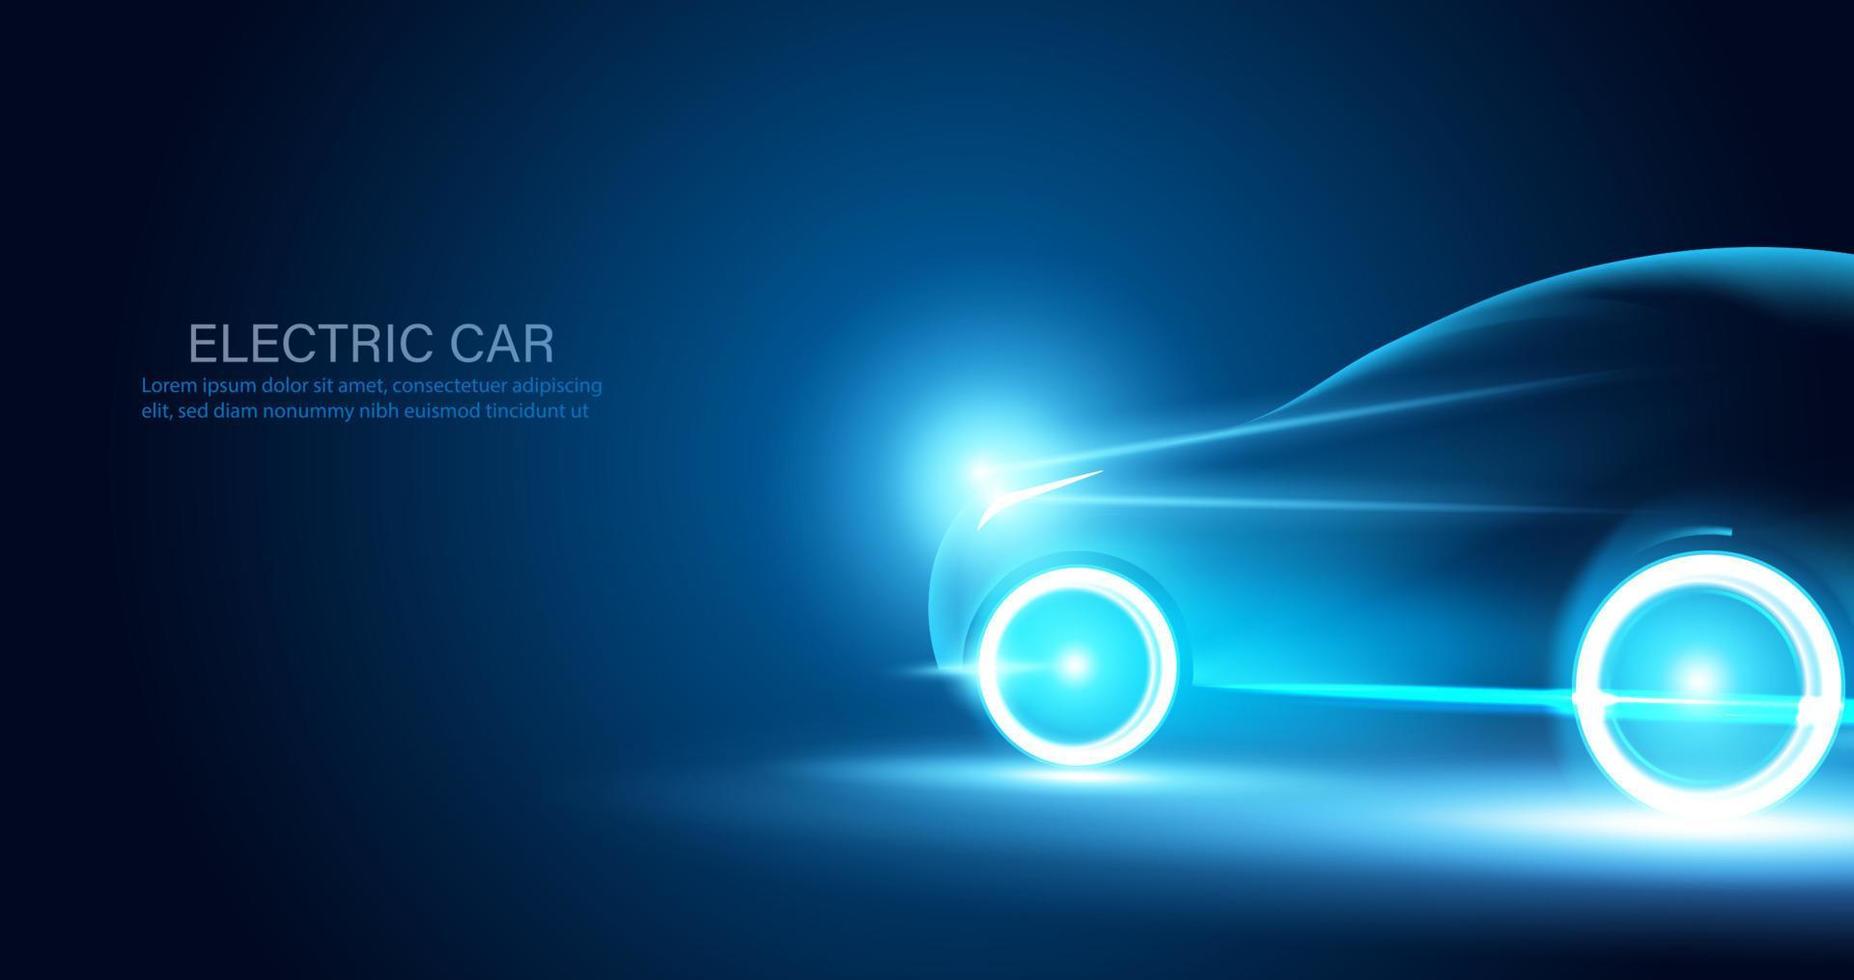 abstrakta elbilar i illustrationen, elbilar drivs av elenergi konceptbil ev. framtida energi.på blå bakgrund vektor